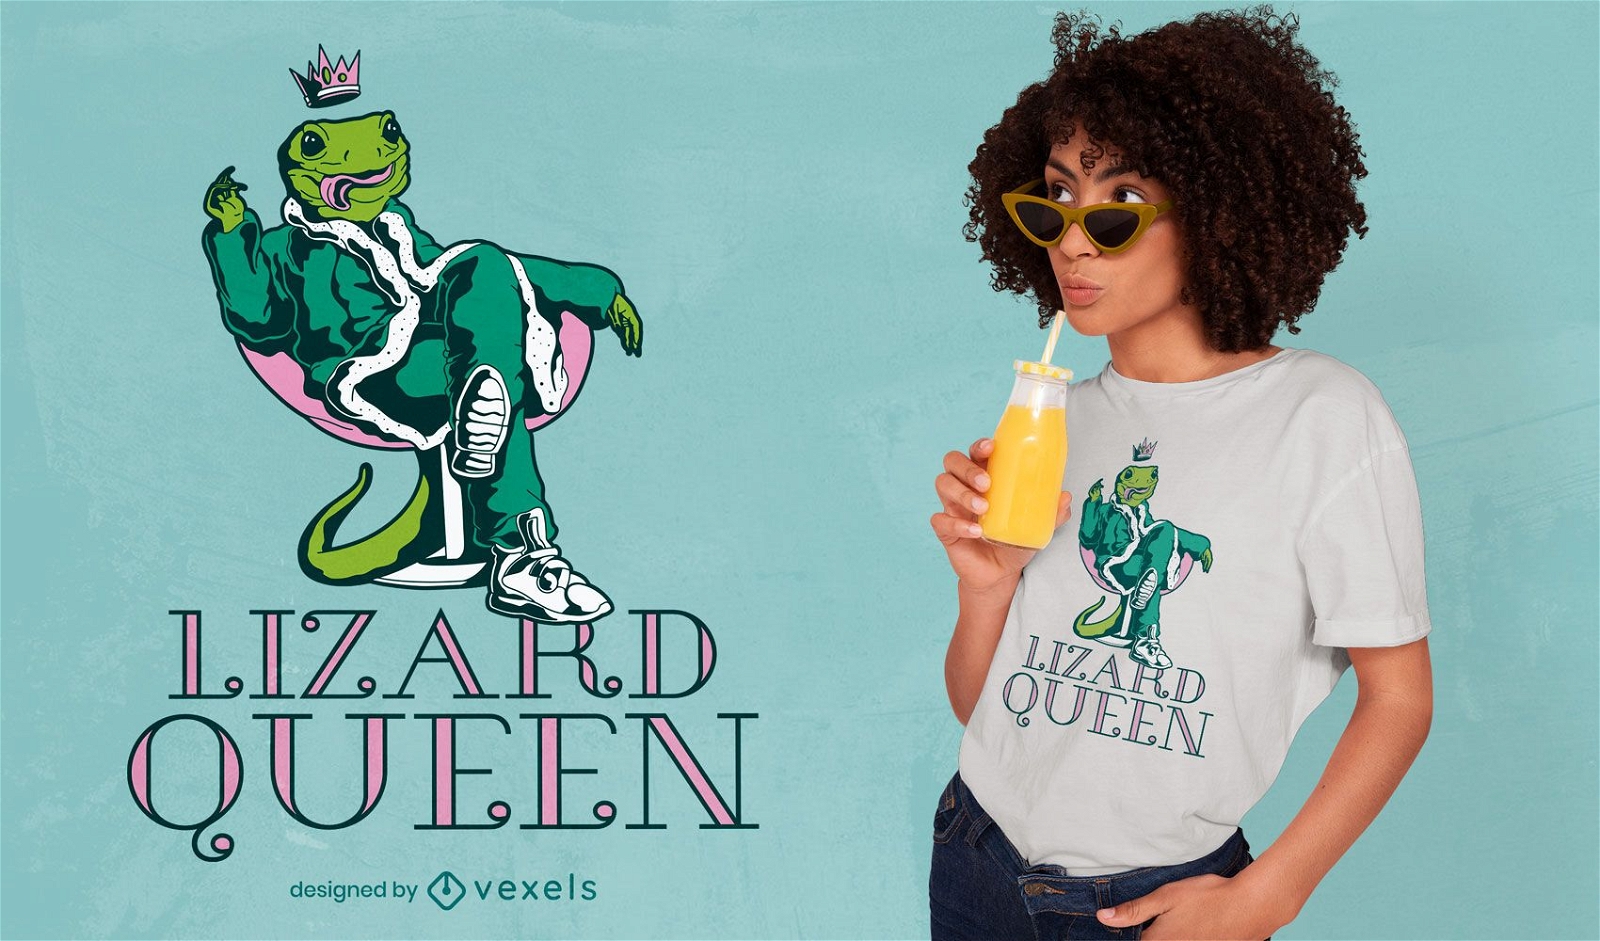 Lizard queen t-shirt design